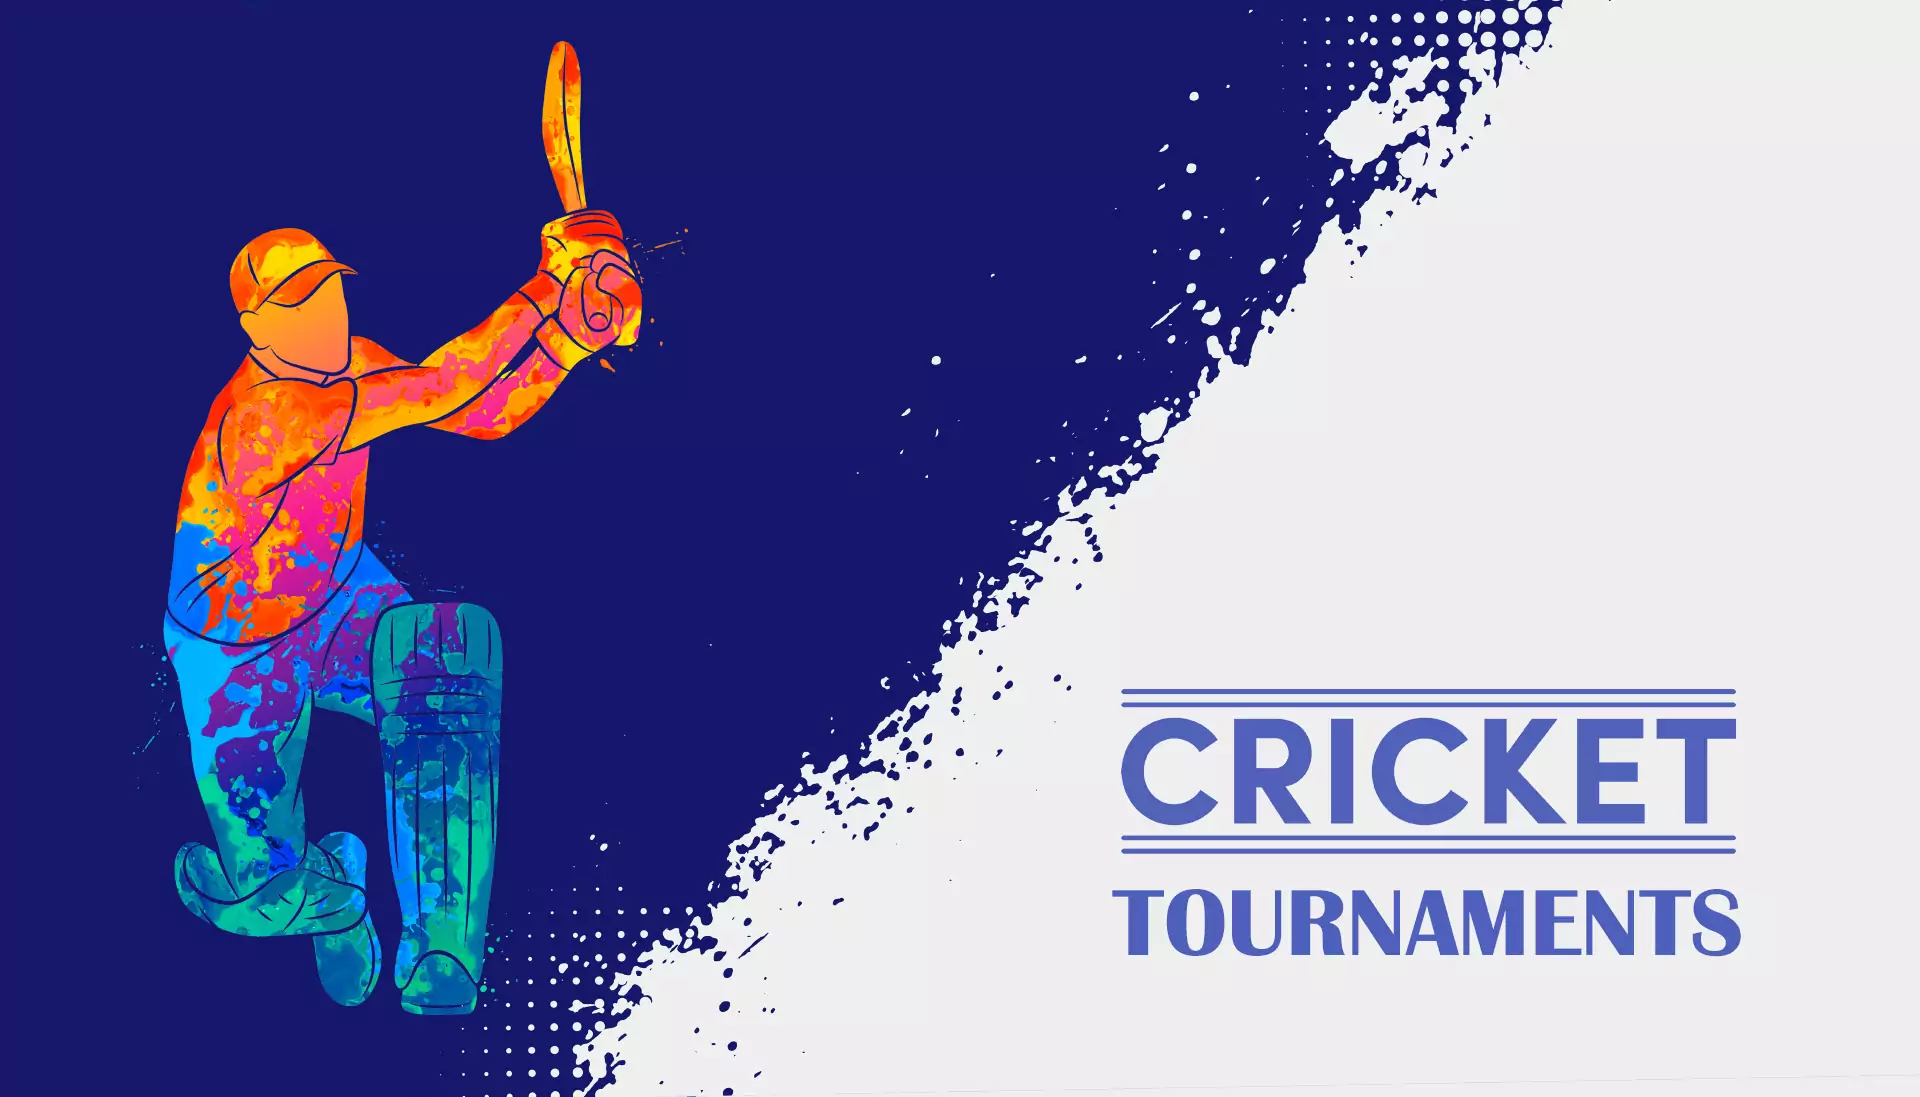 लोकप्रिय क्रिकेट टूर्नामेंट पर दांव लगाएं और बोनस प्राप्त करें।